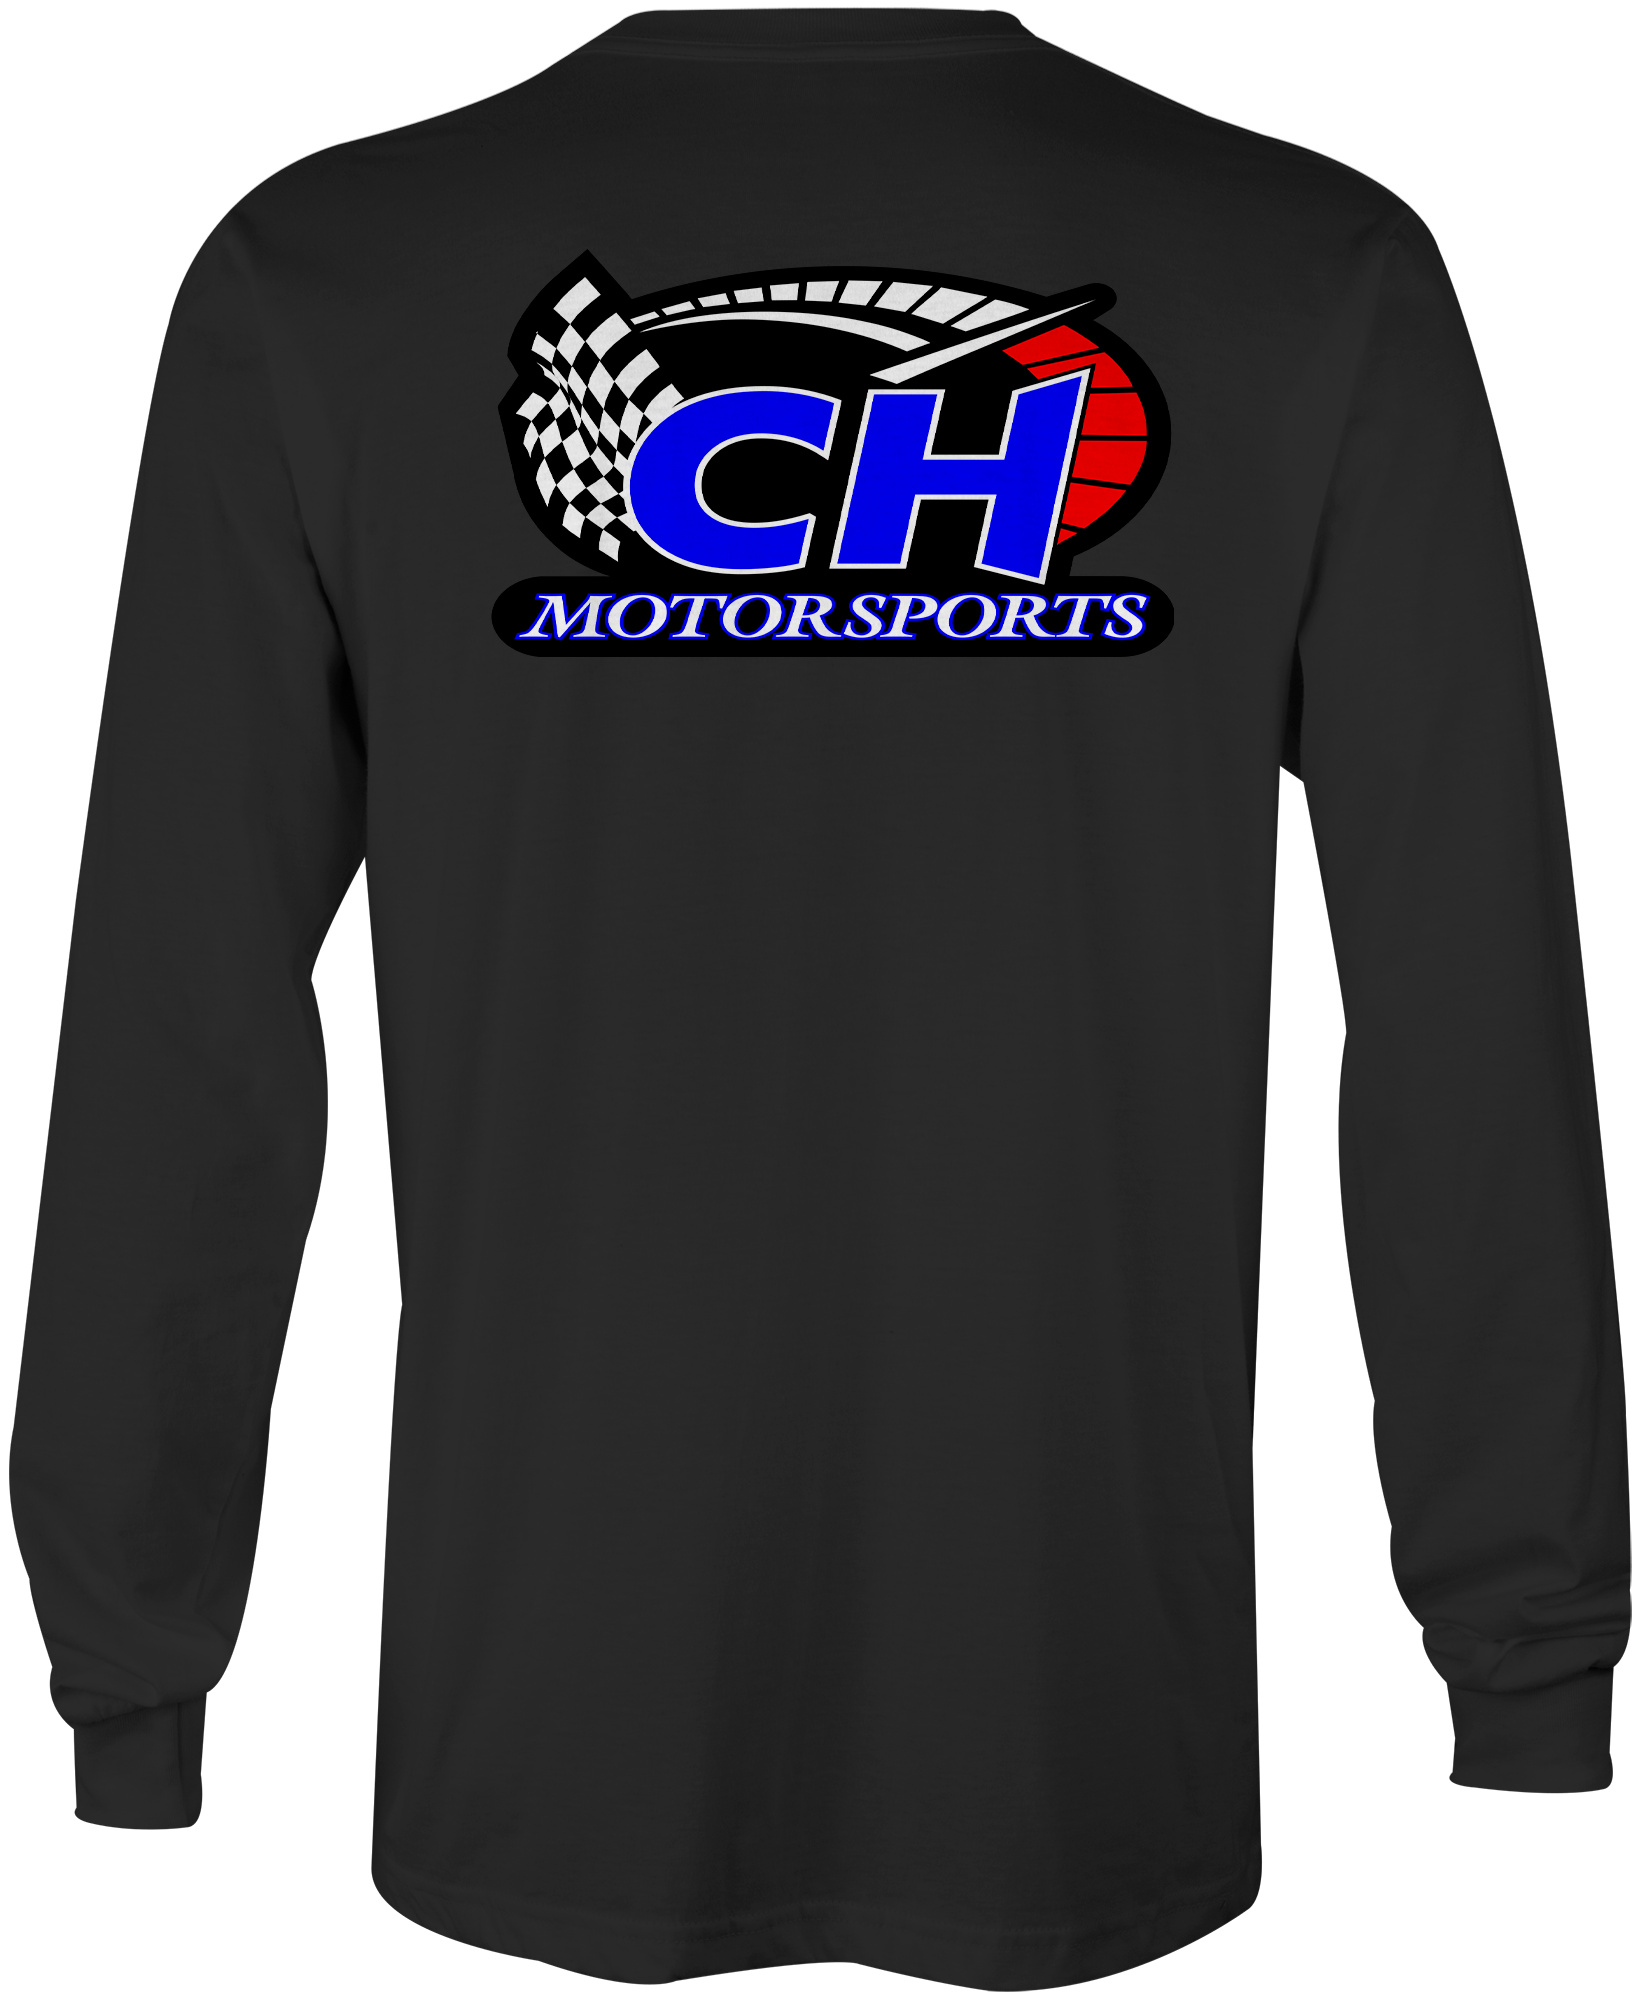 C&H Motorsports Long Sleeves